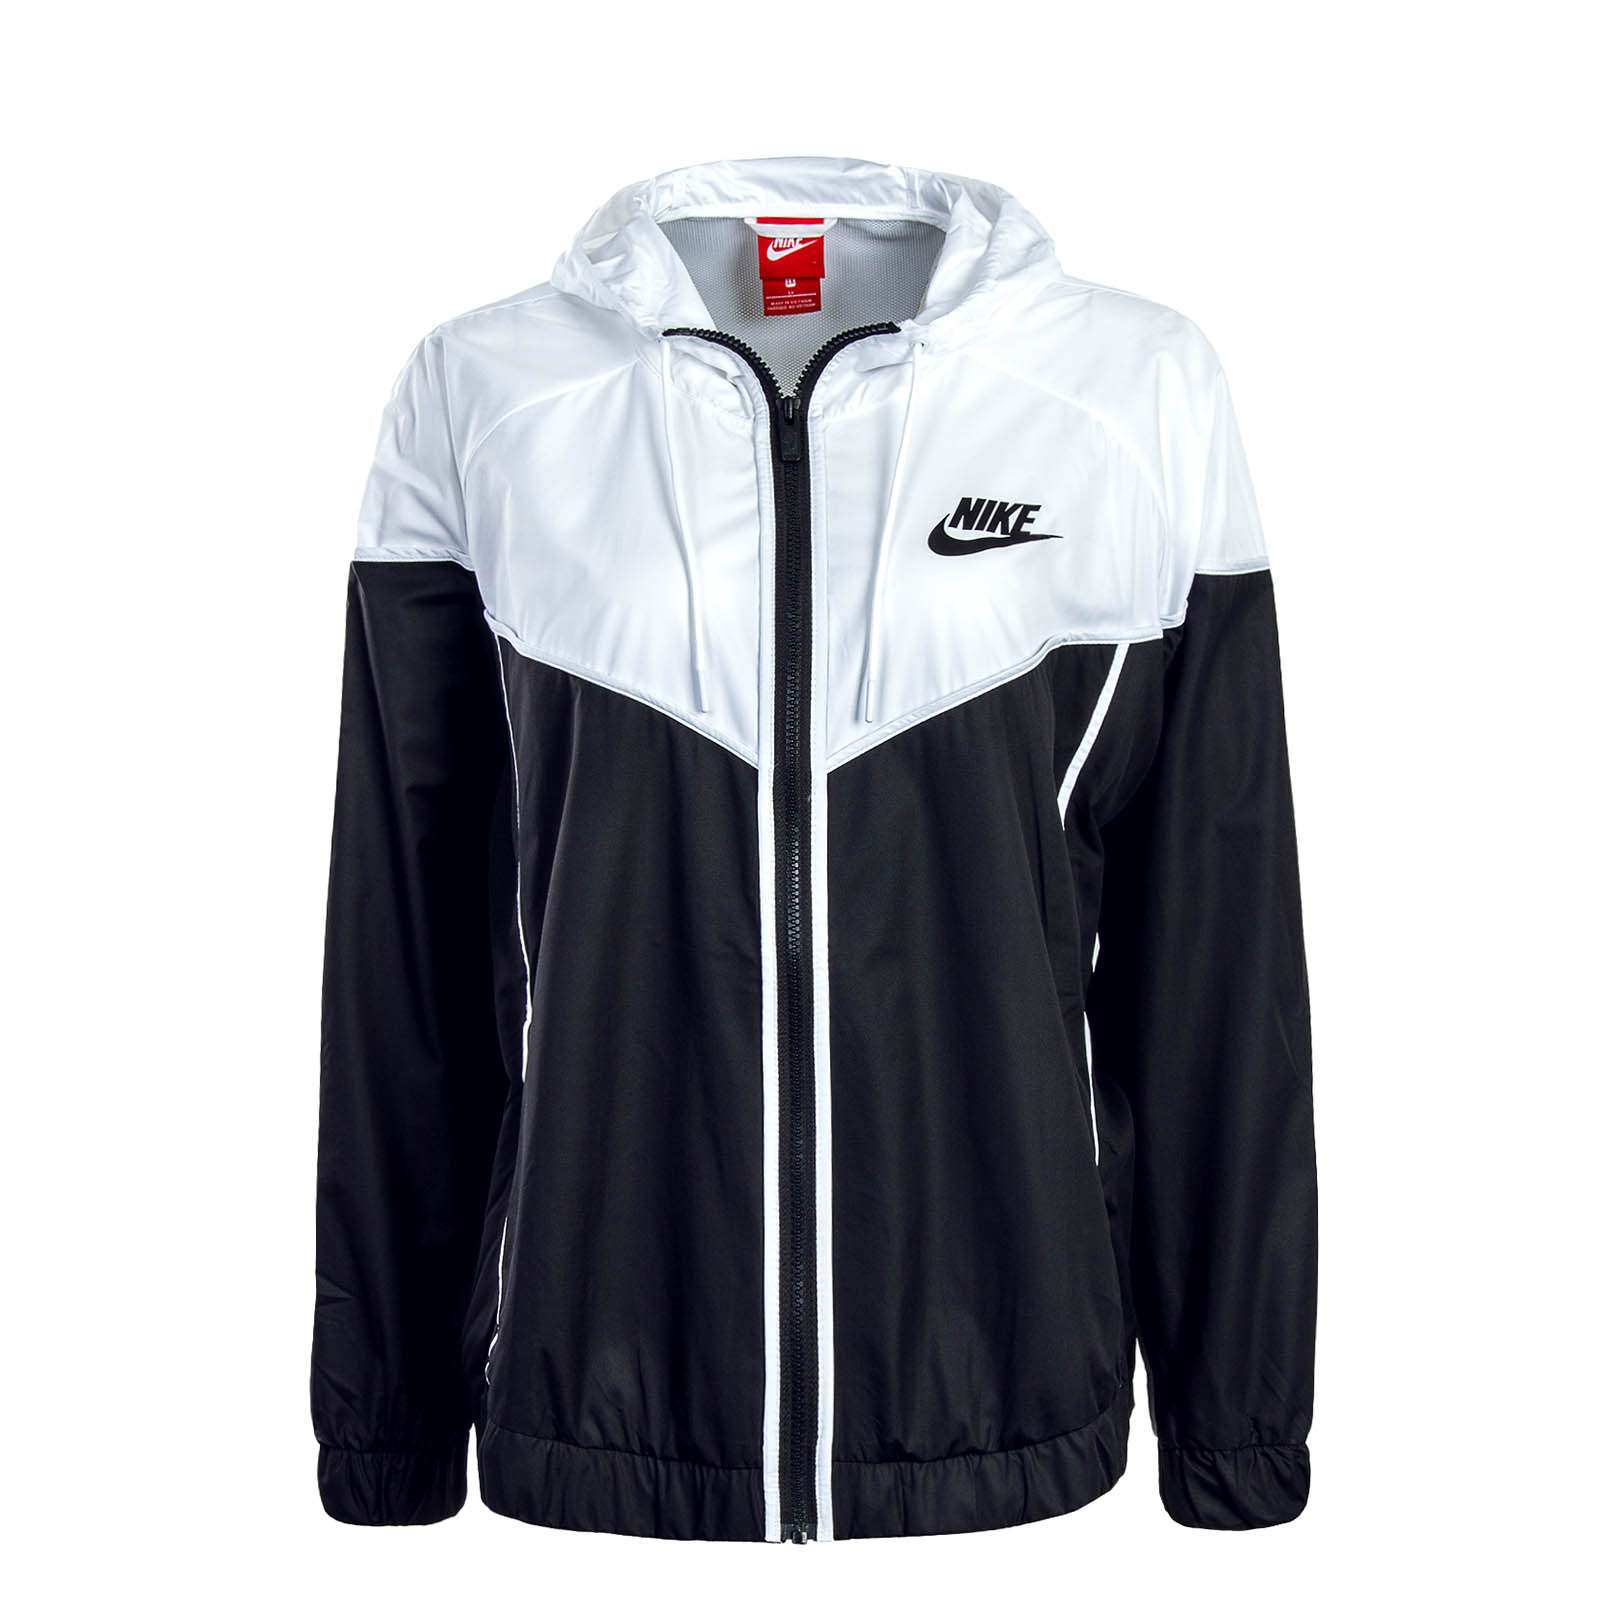 Schwarz Weisse Damen Jacke Von Nike Online Kaufen